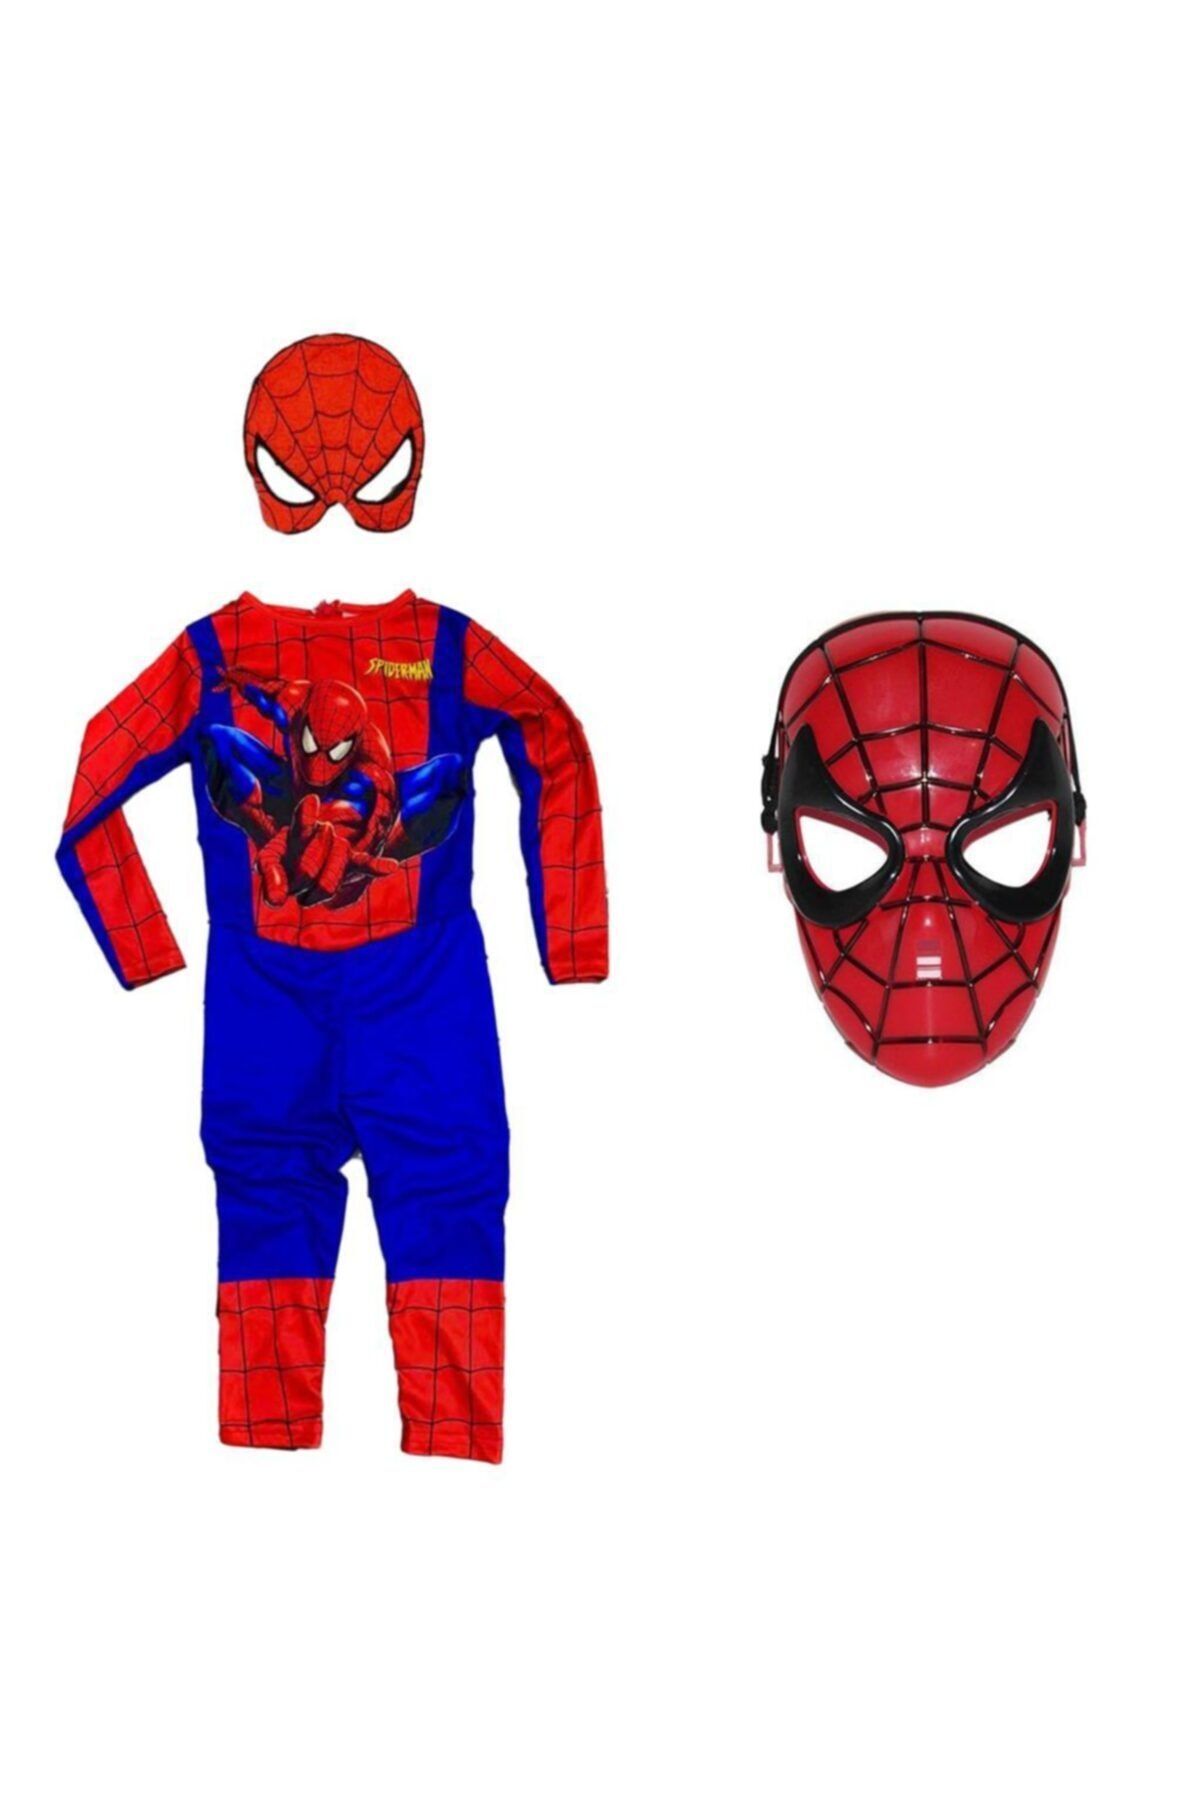 Mashotrend Baskılı Spiderman Örümcek Adam Kostümü ve Spiderman Maske